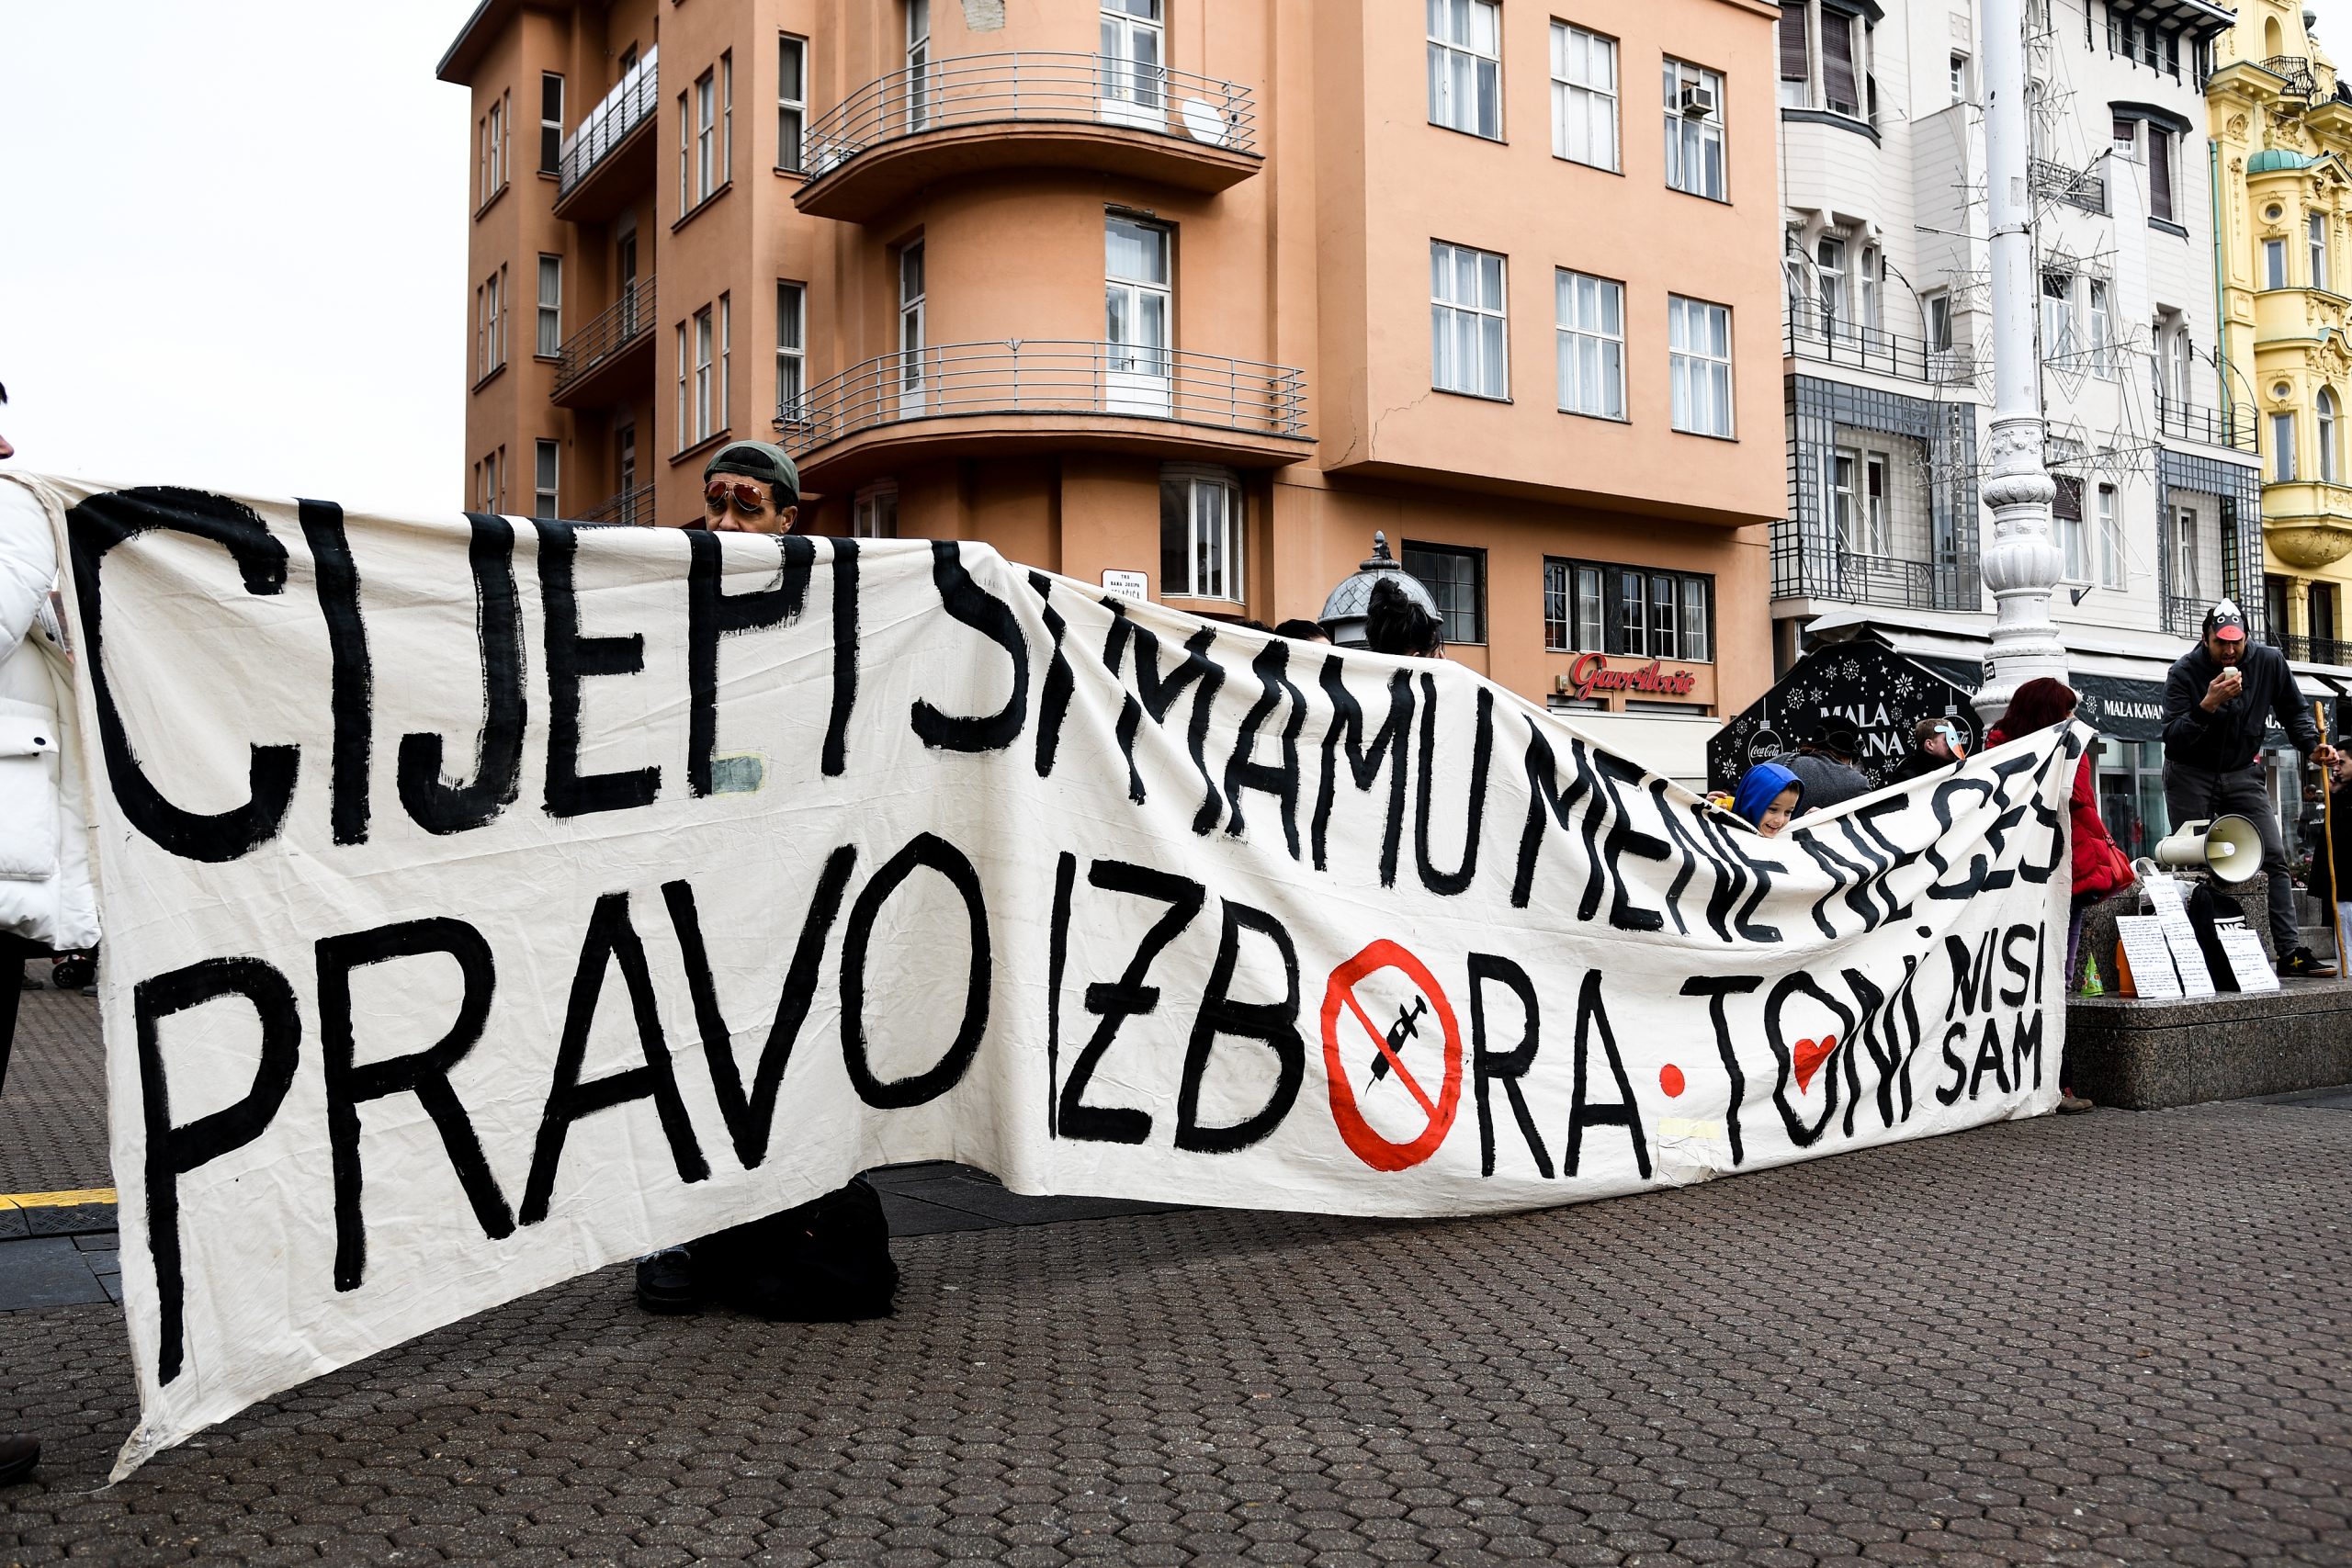 5.12.2020., Zagreb - Prosvjed protiv mjera stozera na Trgu bana Josipa Jelacica uz osiguranje policije.
Photo: Zoe Sarlija/PIXSELL